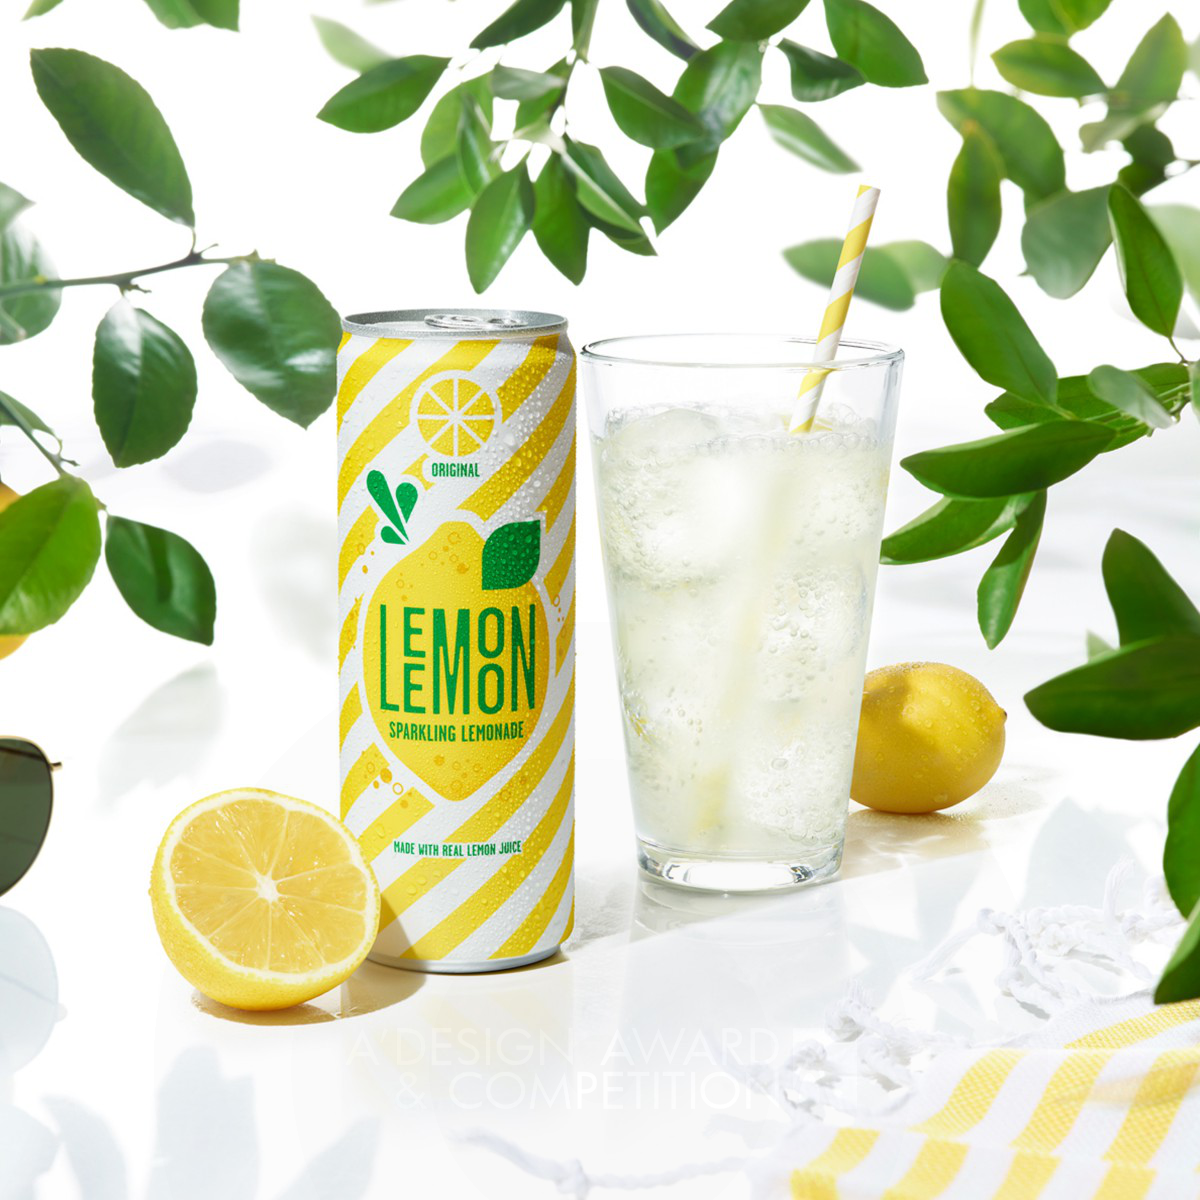 7Up Lemon Lemon Brand Packaging